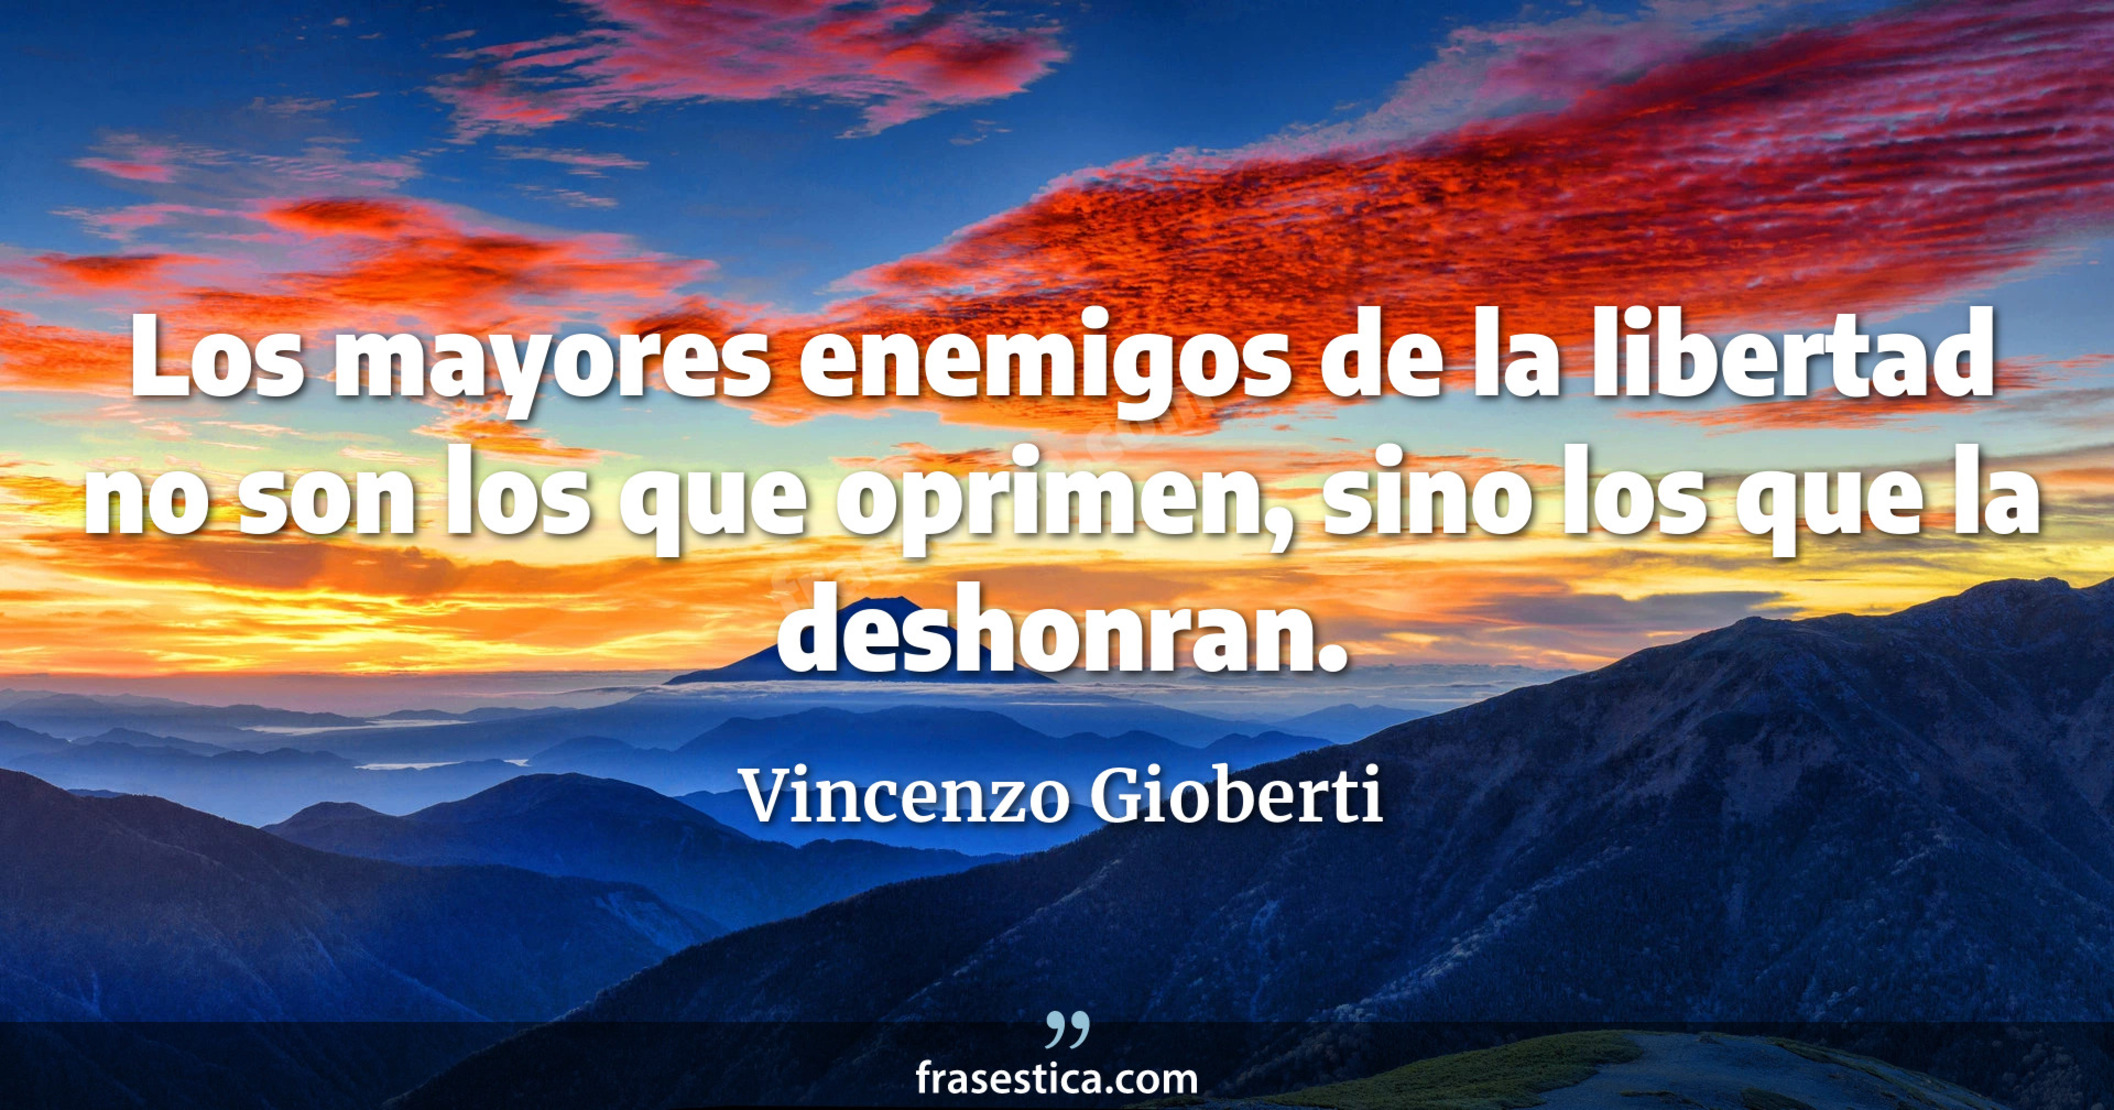 Los mayores enemigos de la libertad no son los que oprimen, sino los que la deshonran. - Vincenzo Gioberti